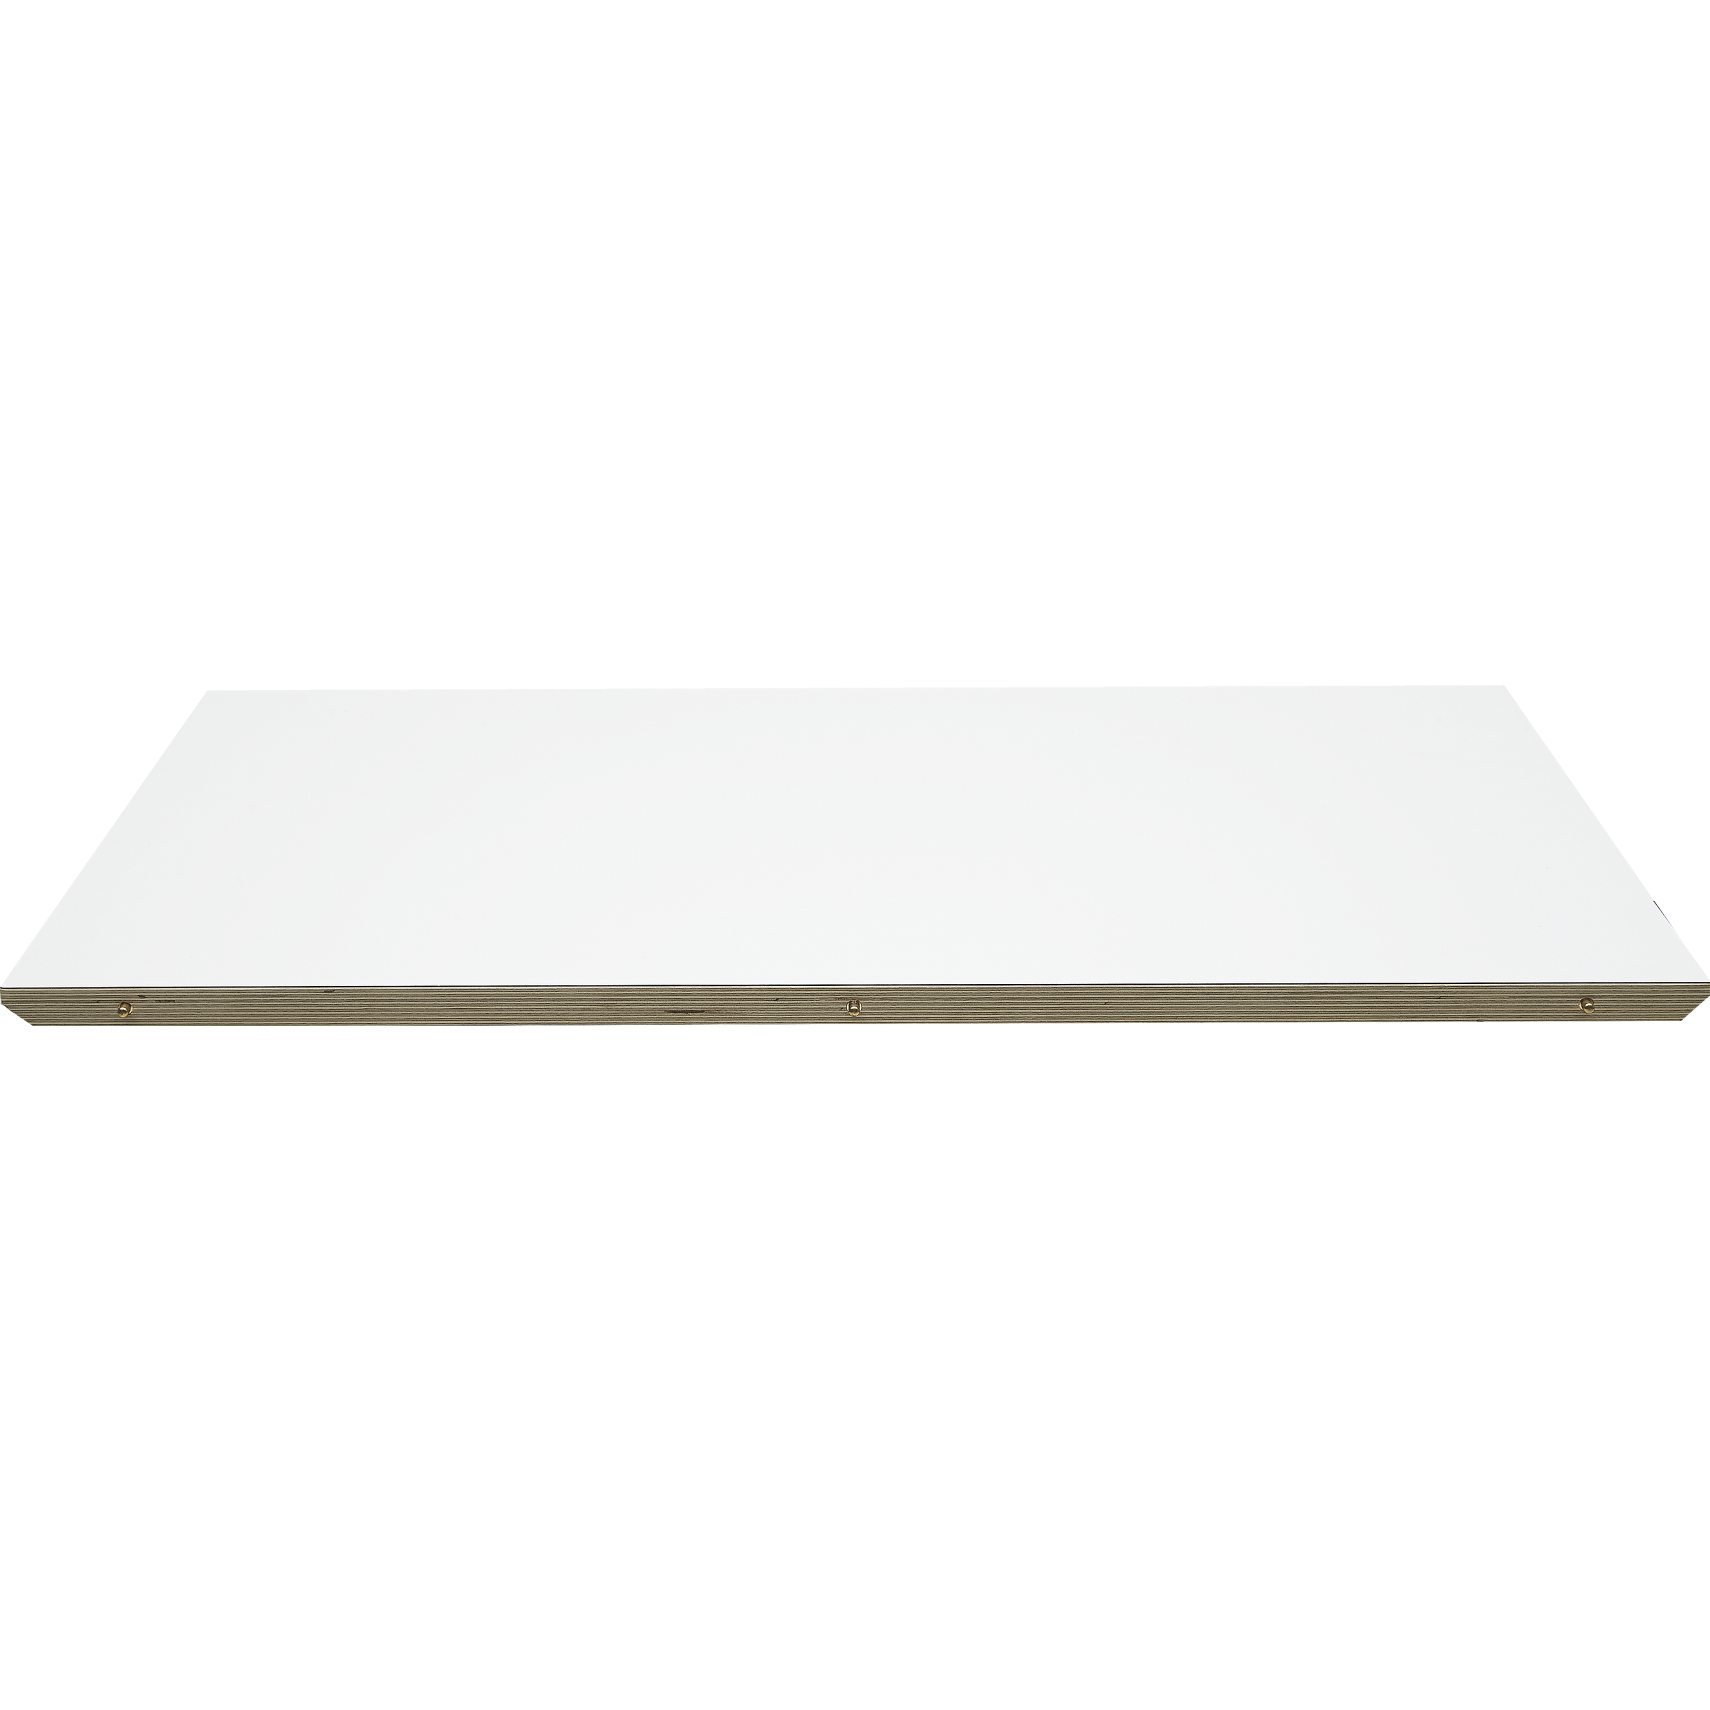 Haslev 3/4 Tillægsplade 46 x 2,5 x 90 cm - Top i hvid laminat og kant i birkekrydsfiner